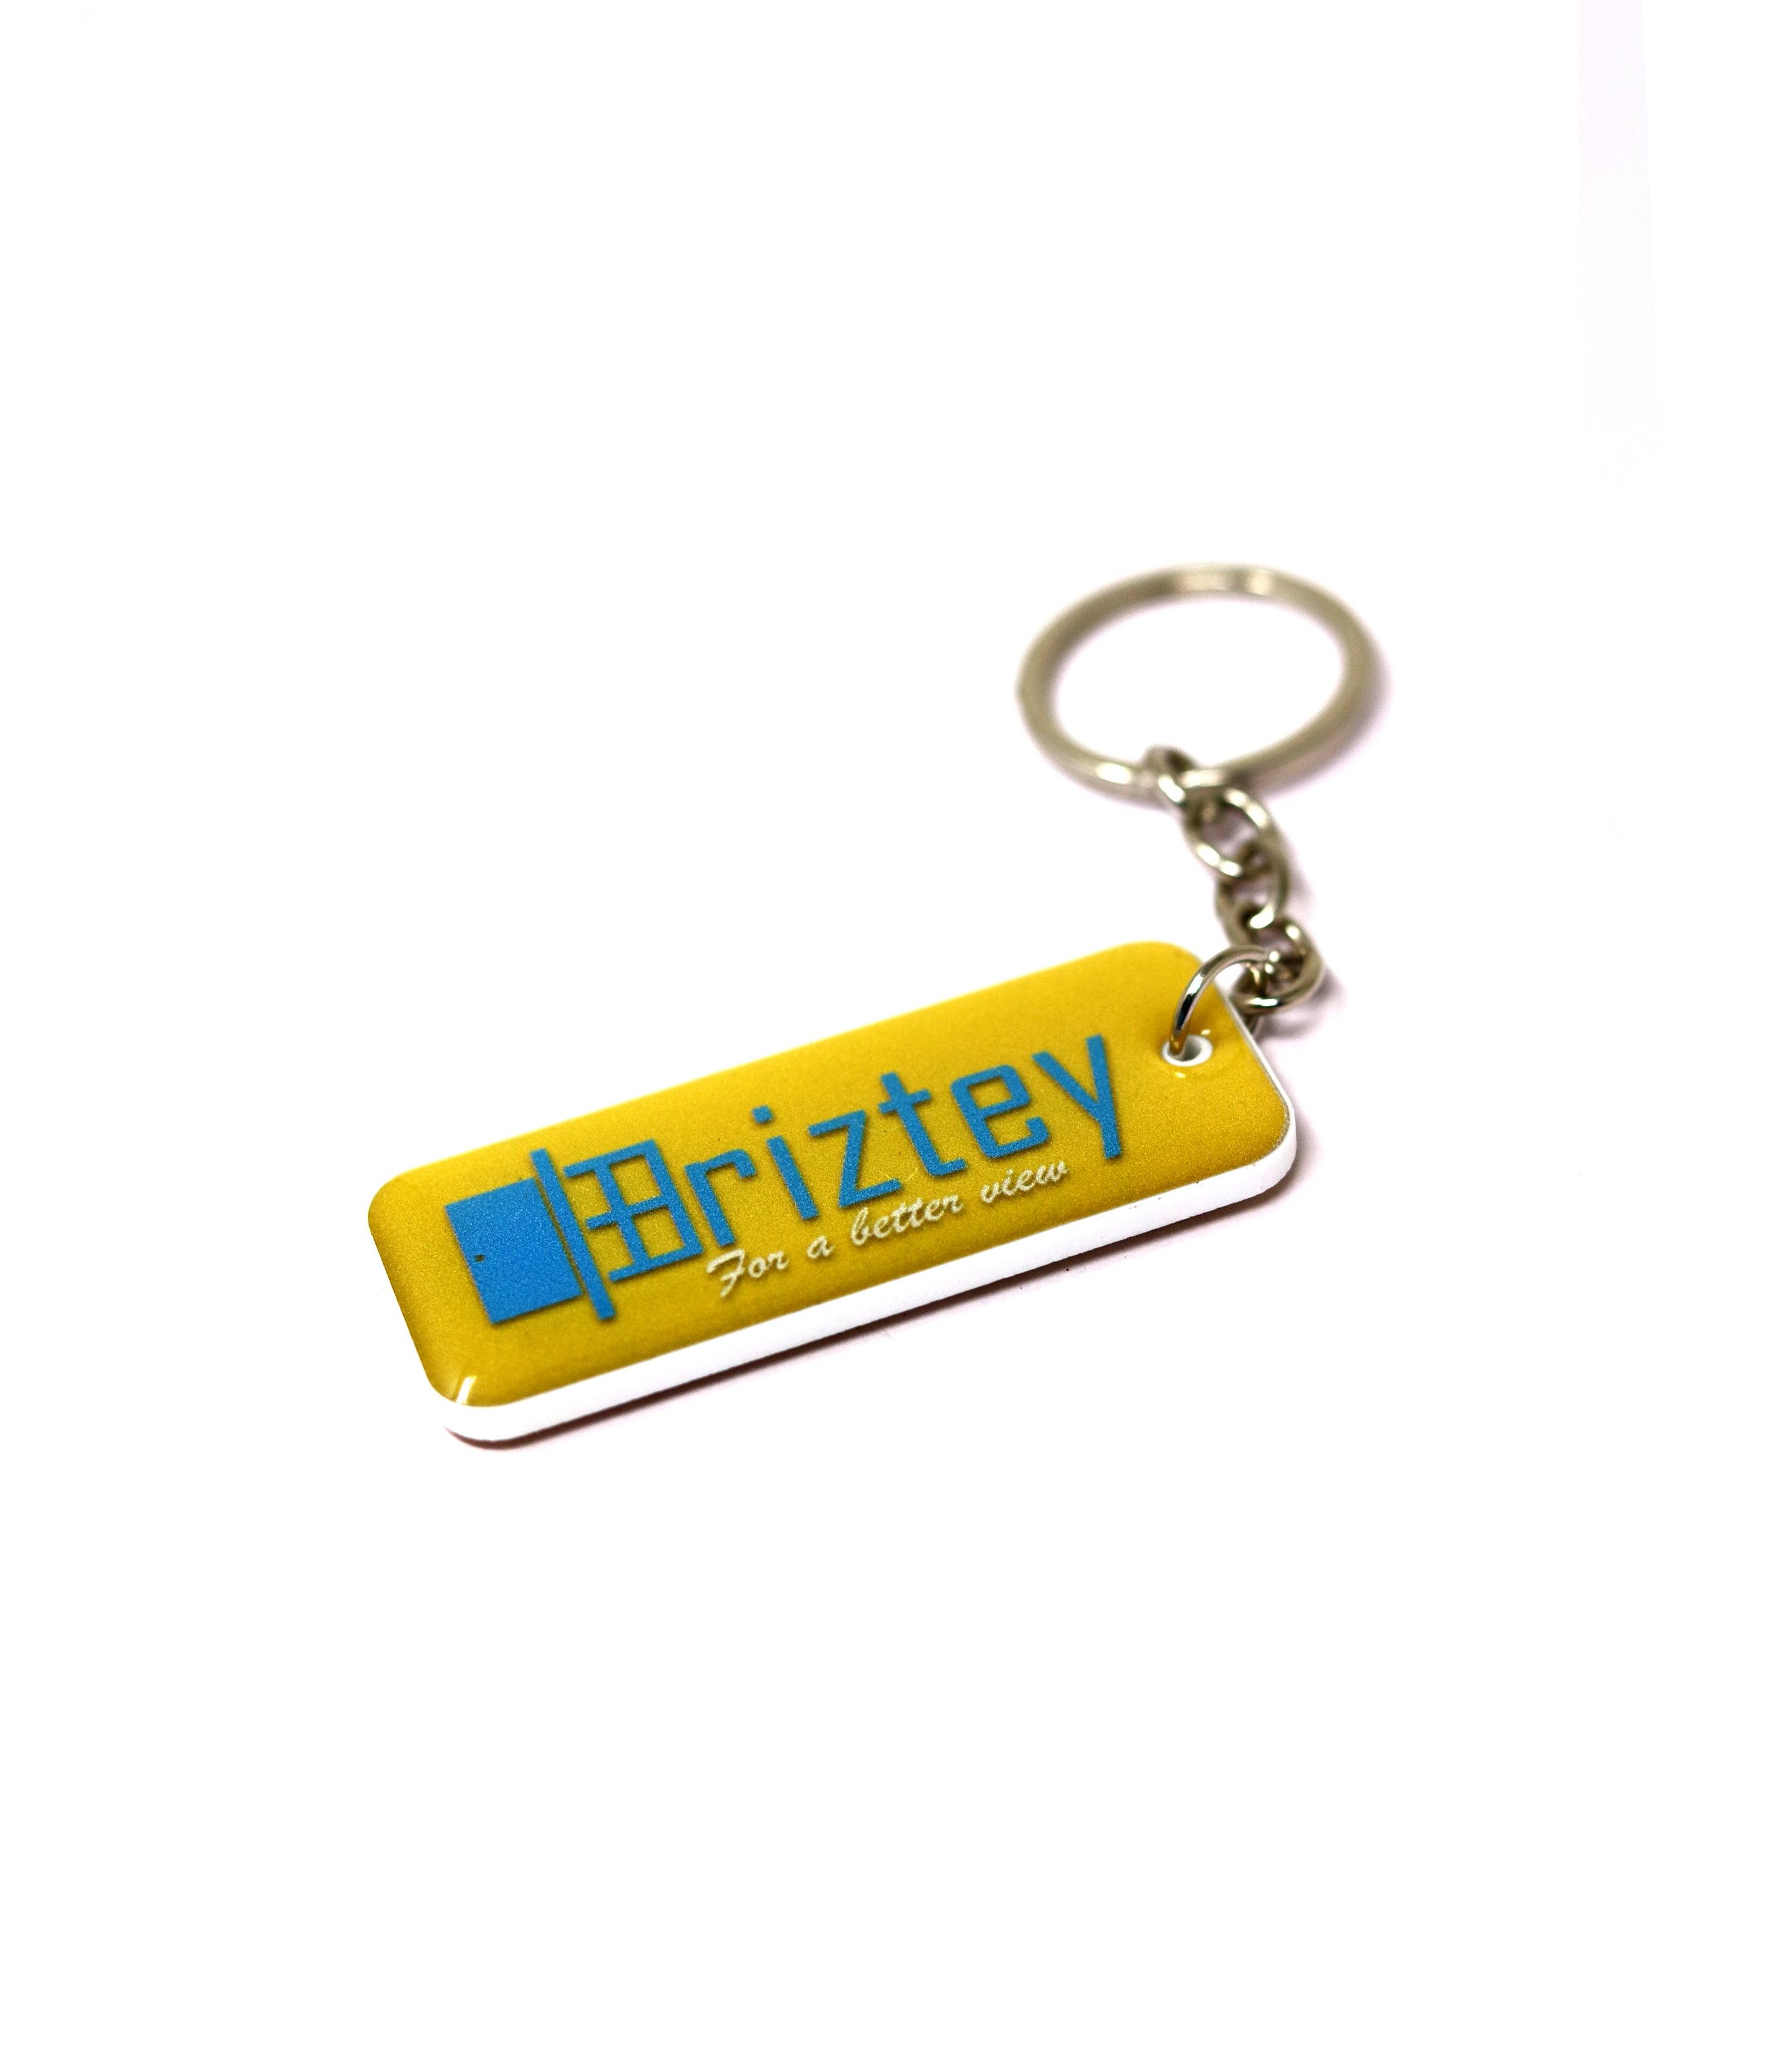 Customized keychain